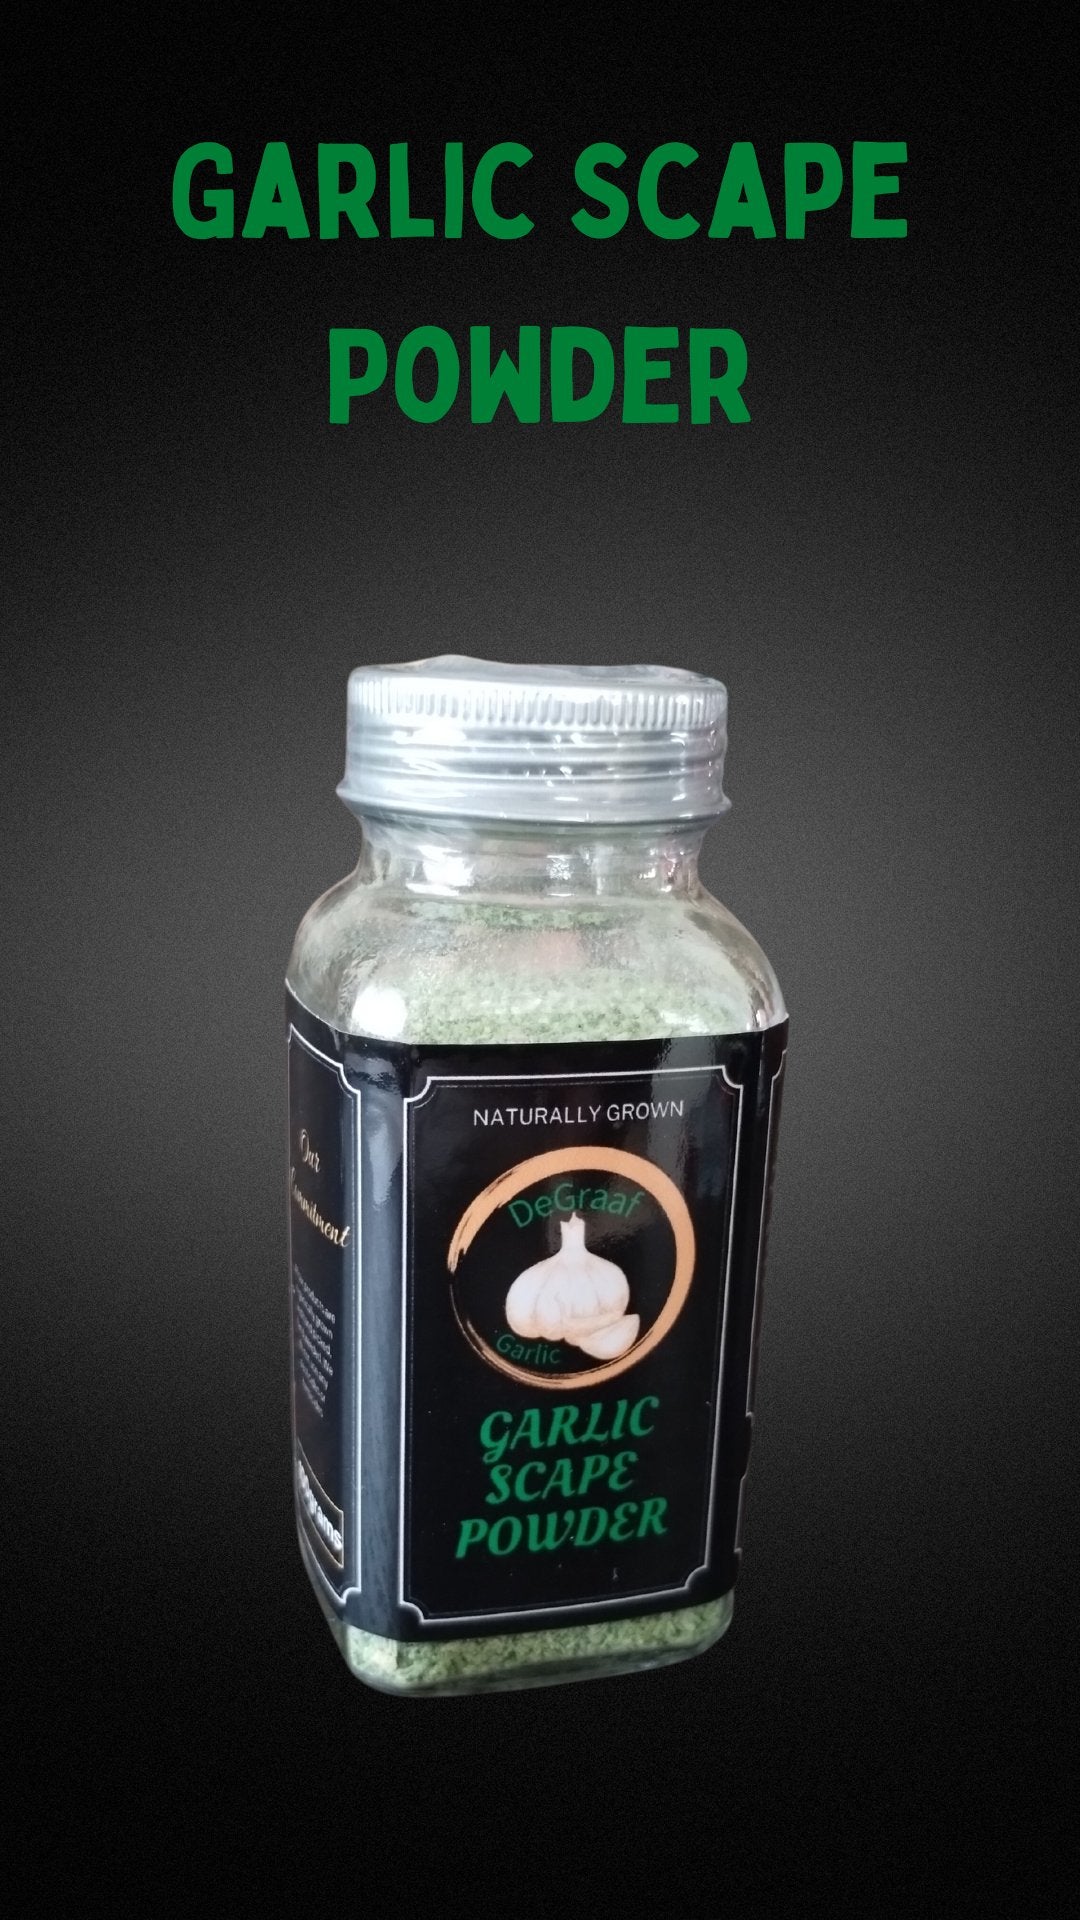 Garlic Scape Powder - deGraaf Garlic